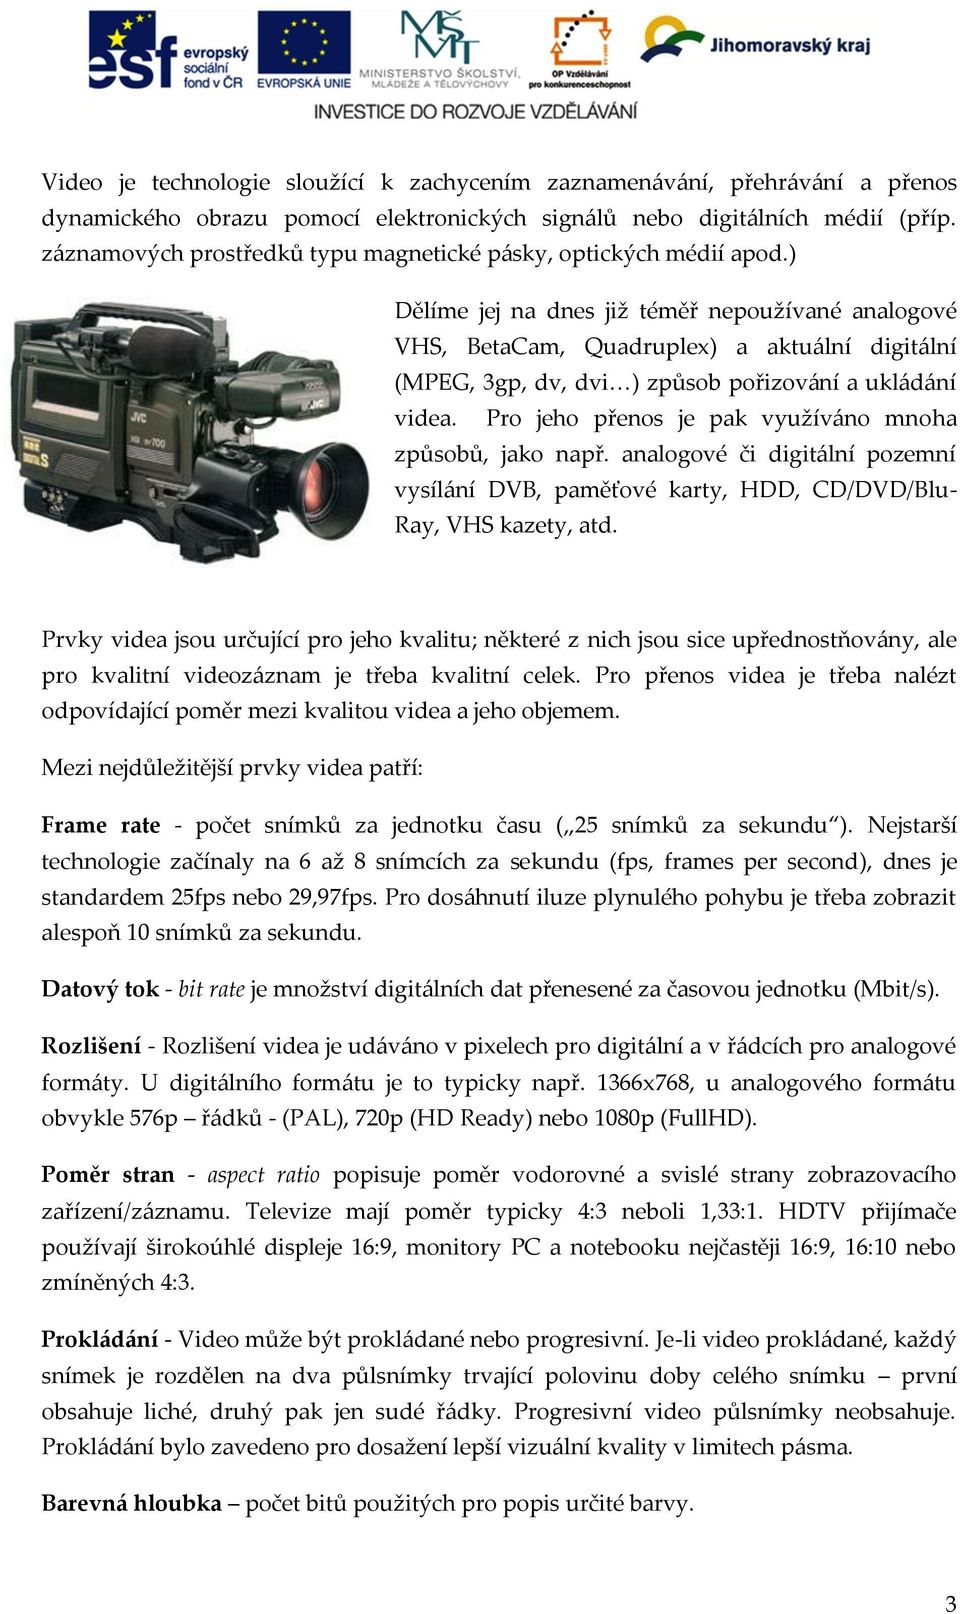 Videokamera, základy editace videa - PDF Stažení zdarma